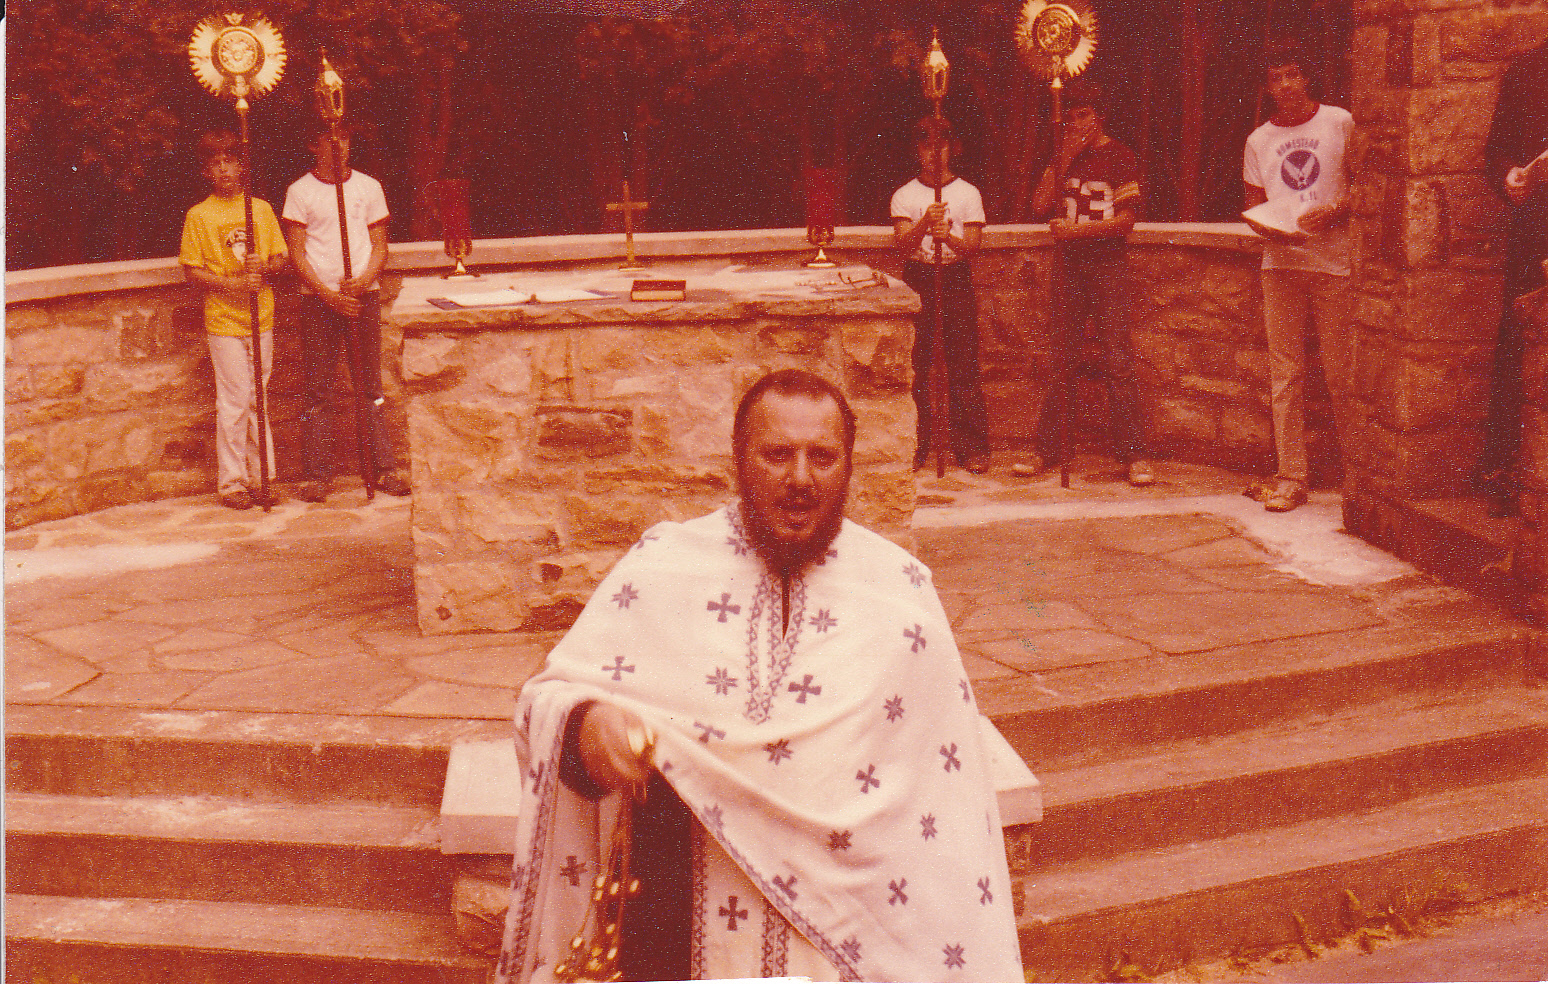 Fr. John Namie